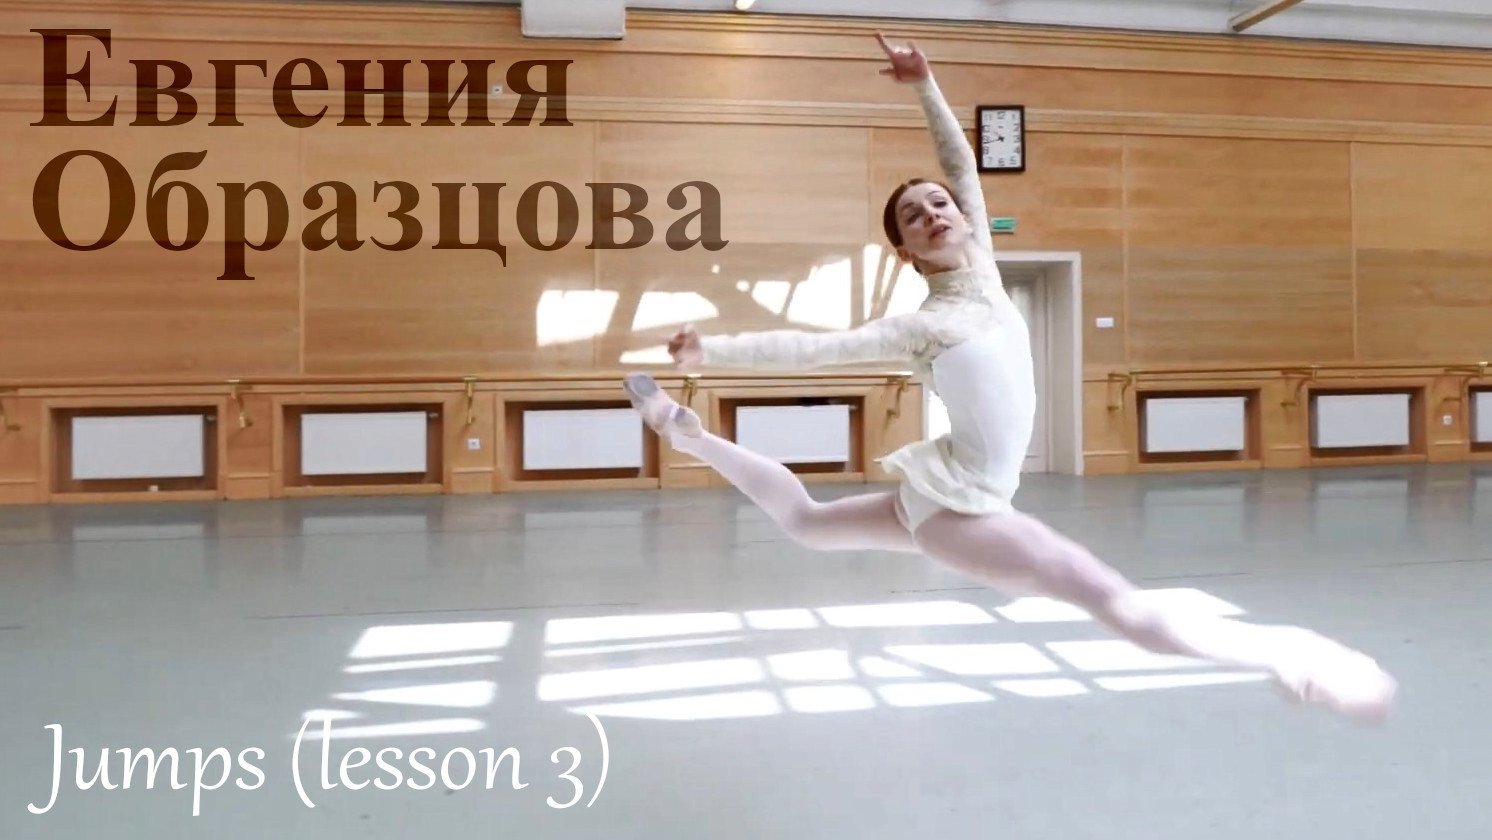 Evgenia Obraztsova Jumps (lesson 3)